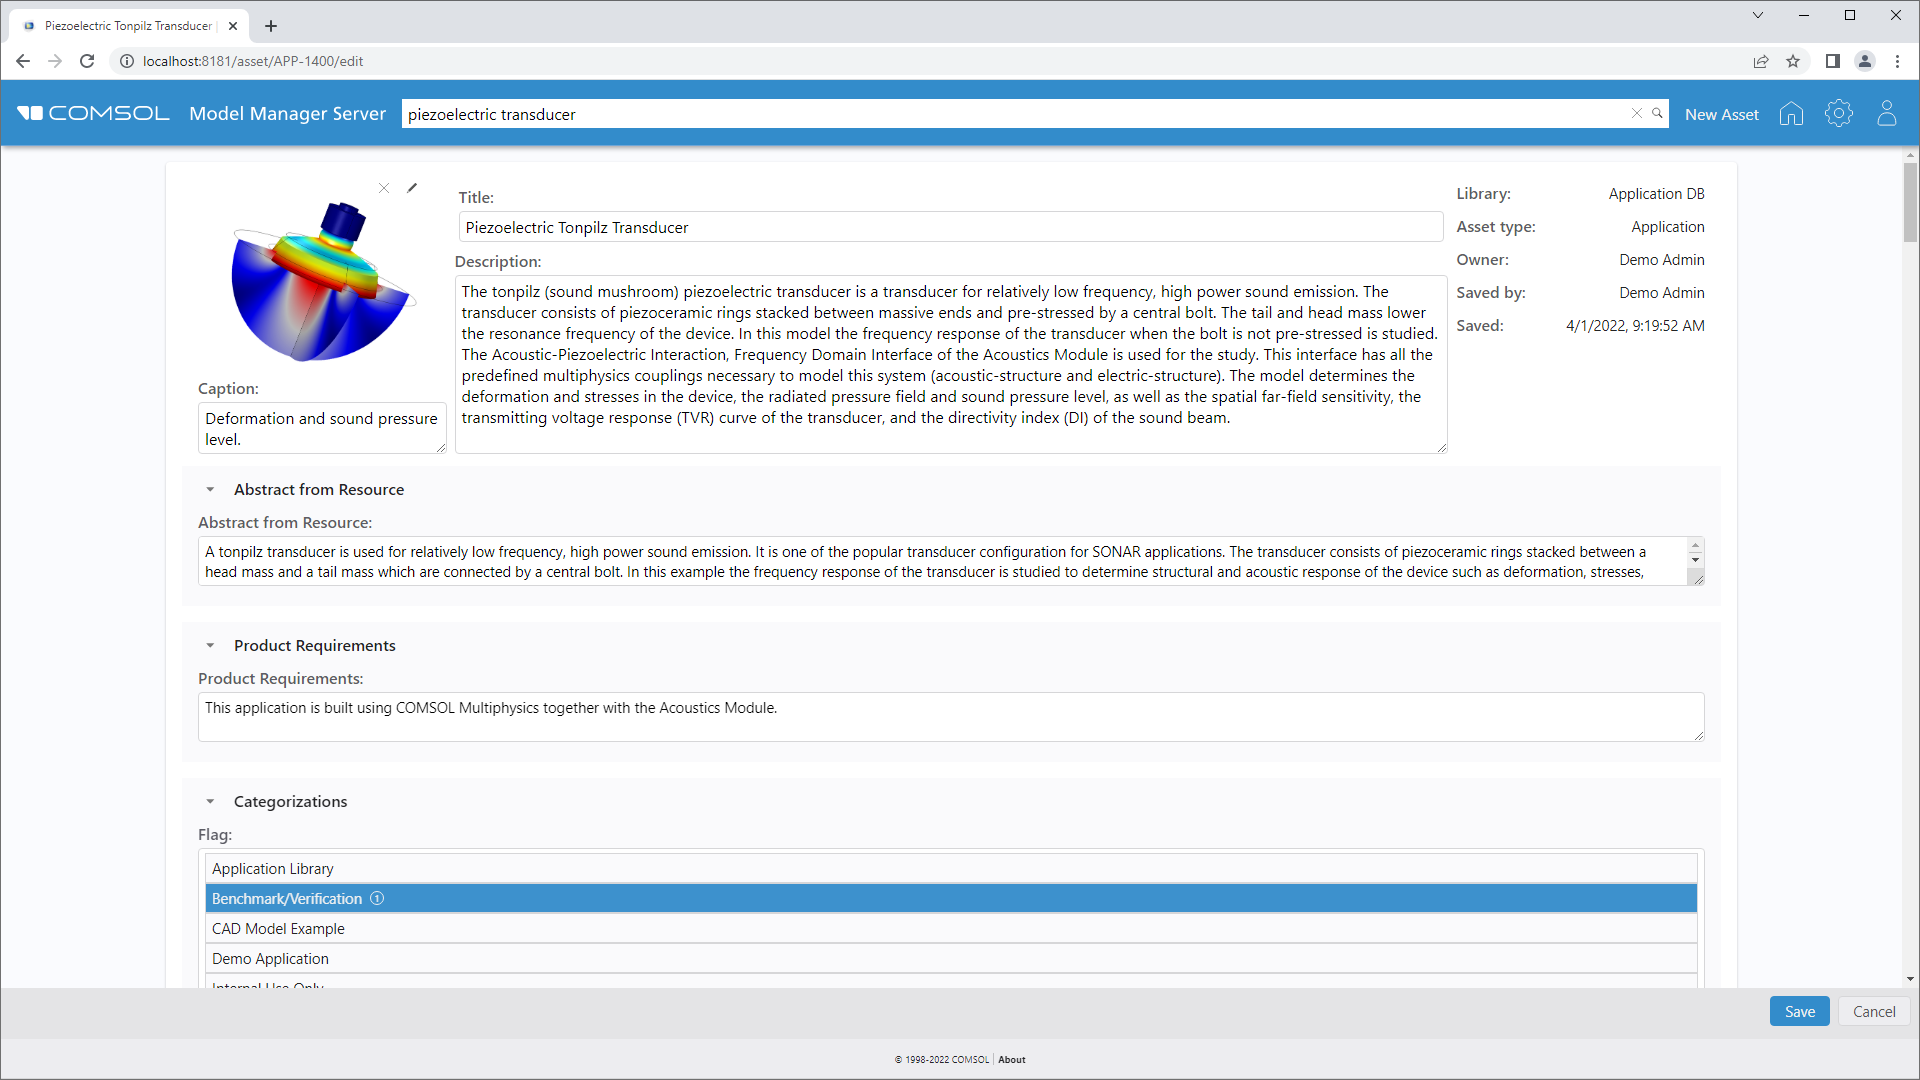 Скриншот страницы ресурса "Пьезоакустический излучатель типа Толпилц", на которой показано уменьшенное изображение, описание, требования к модели и многое другое